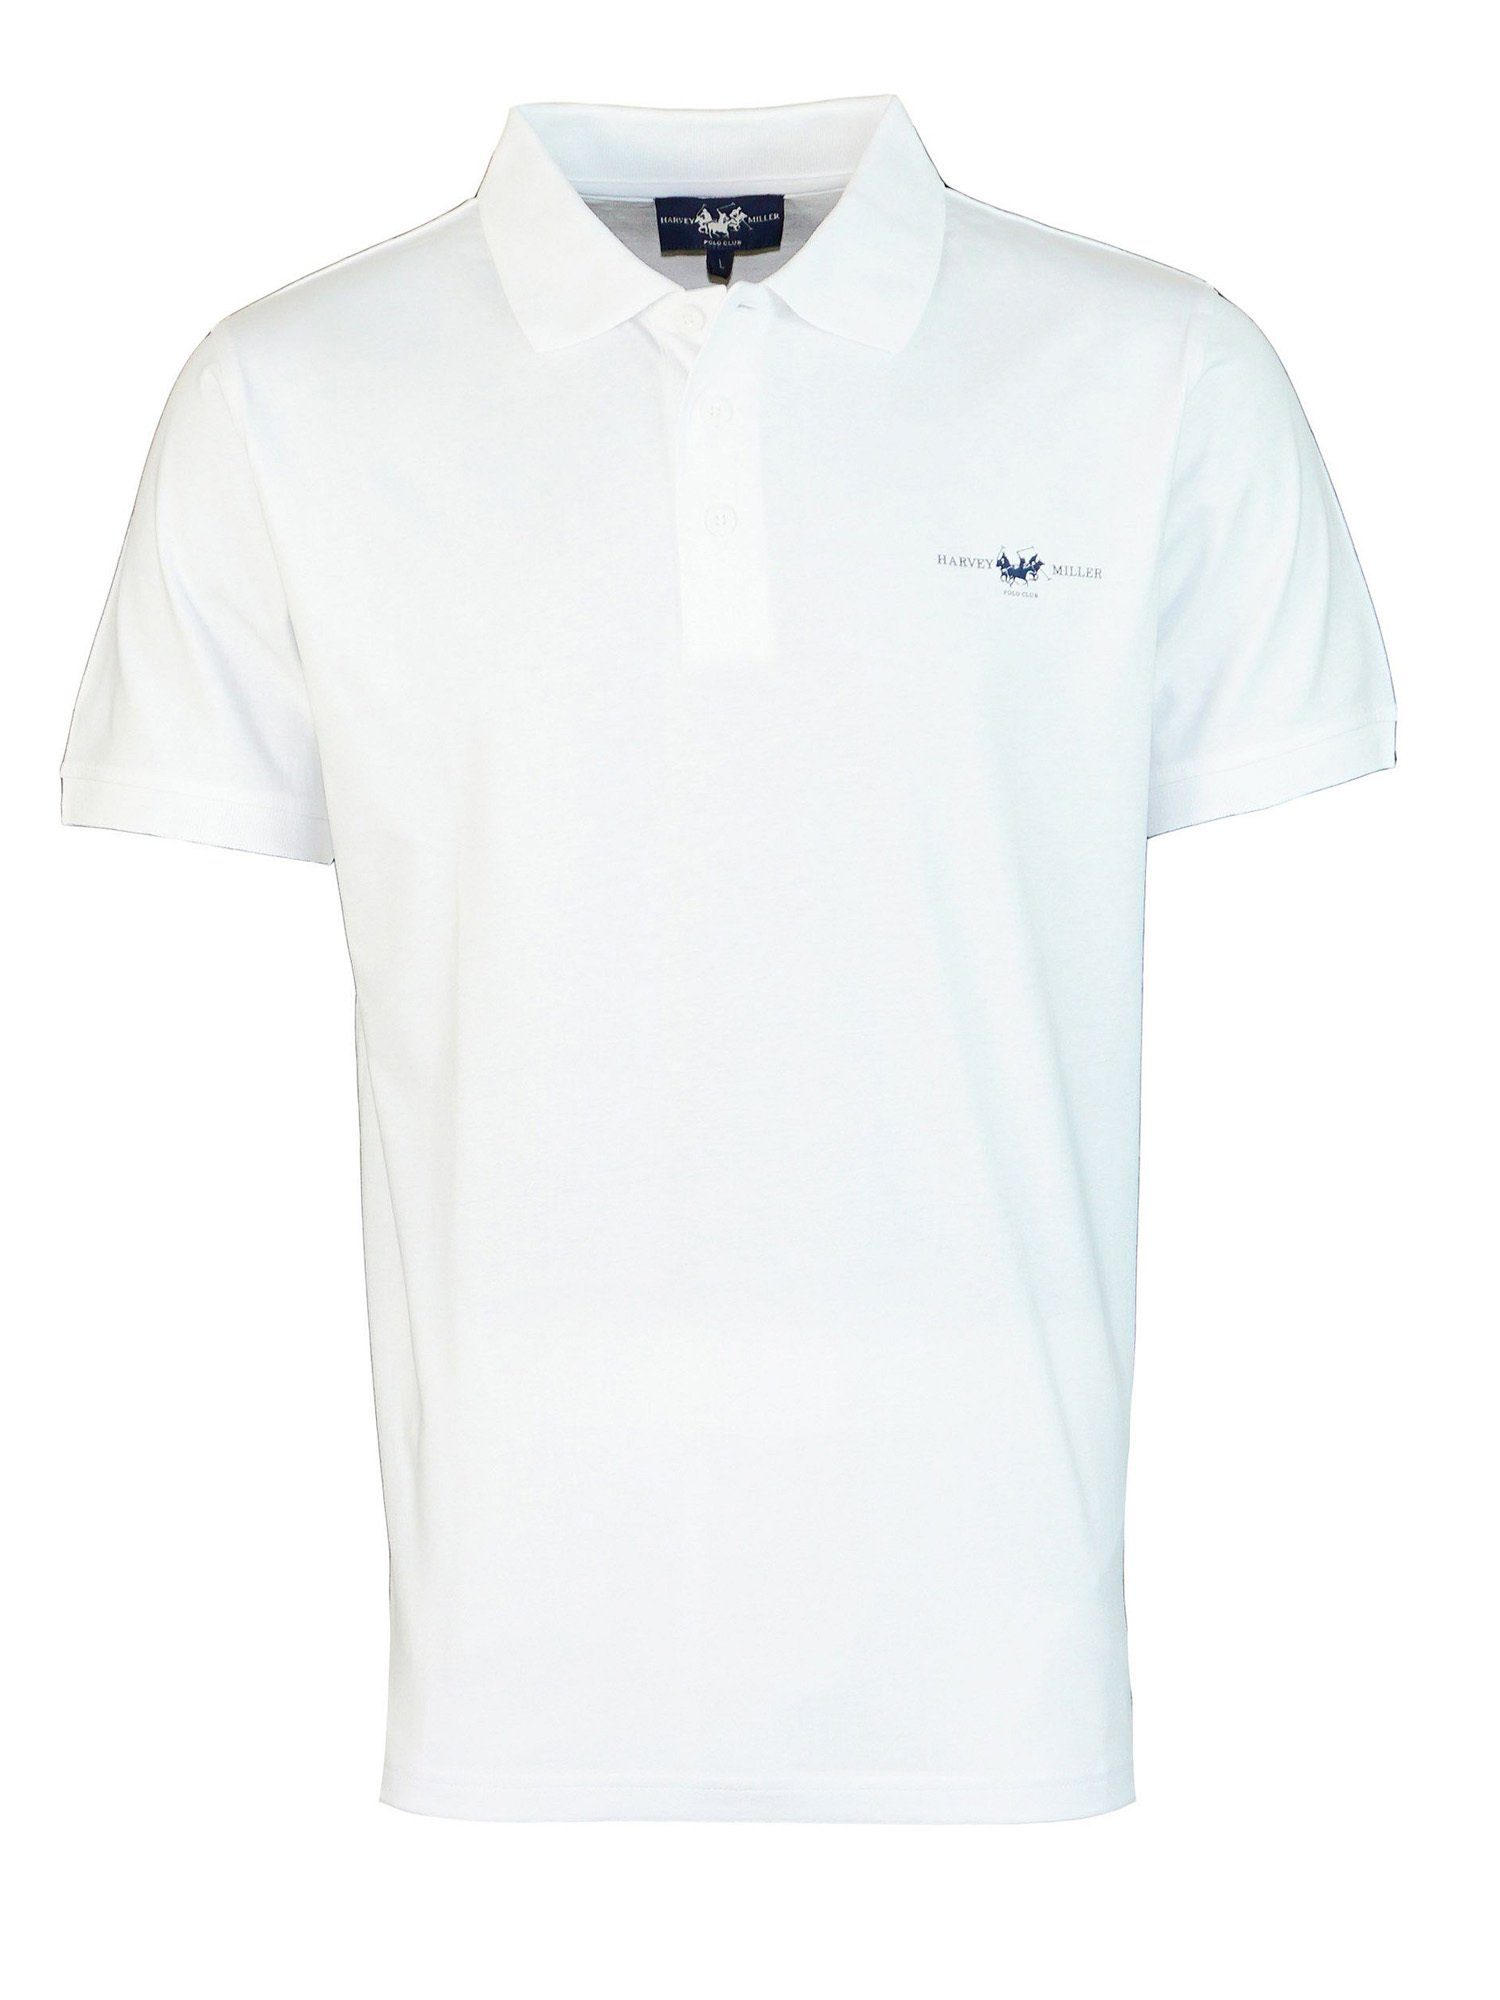 Harvey Miller Poloshirt Shirt Poloshirt Jersey (1-tlg) weiss | Sport-Poloshirts